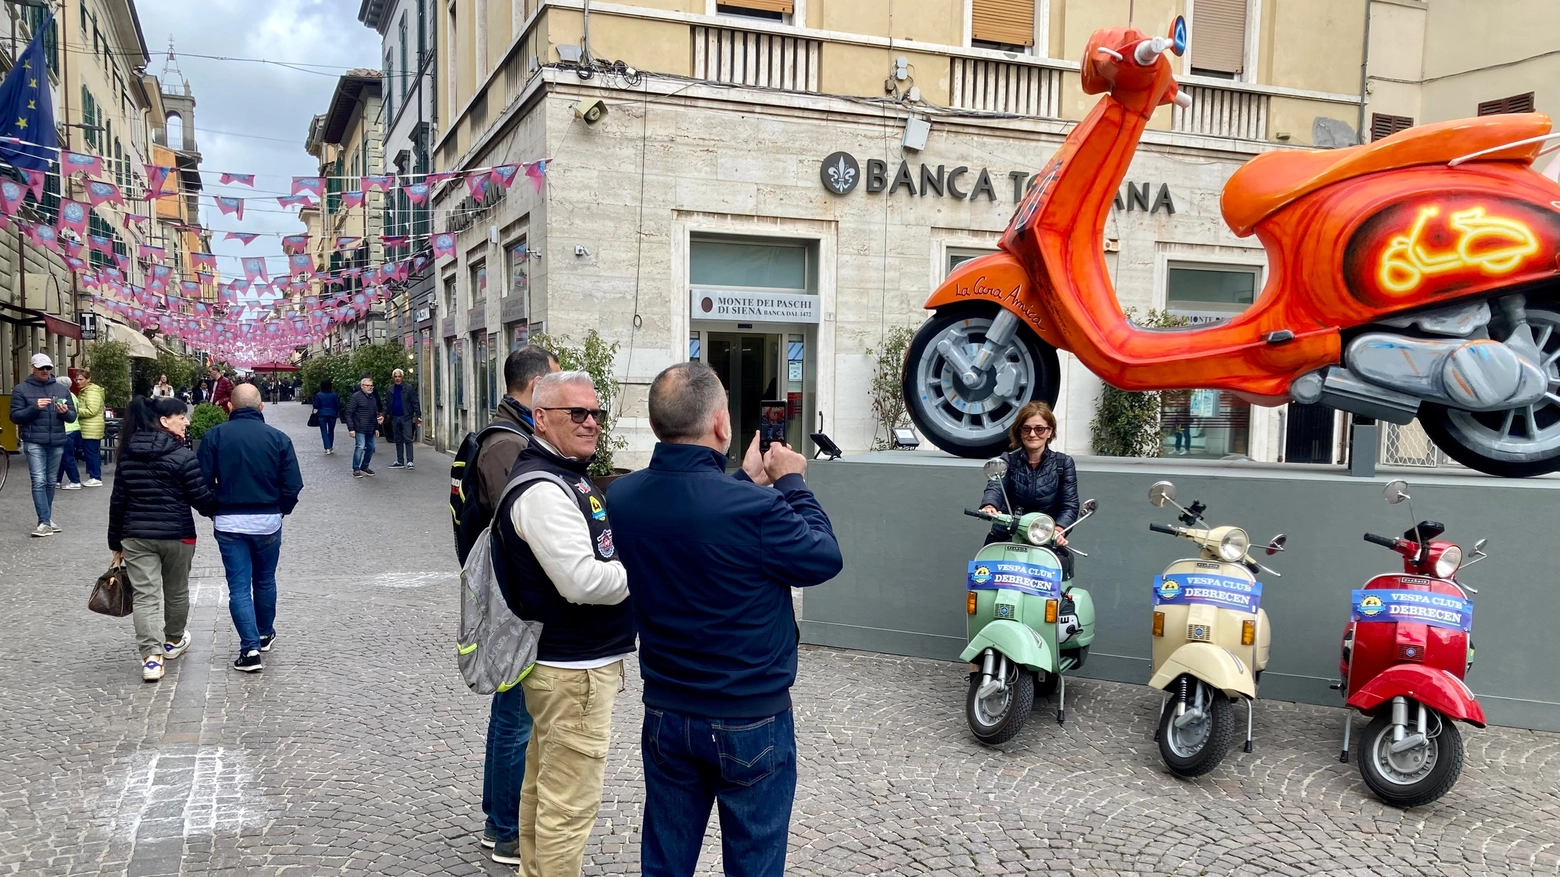 Pontedera, l’appuntamento che celebra la due ruote simbolo del made in Italy nel mondo